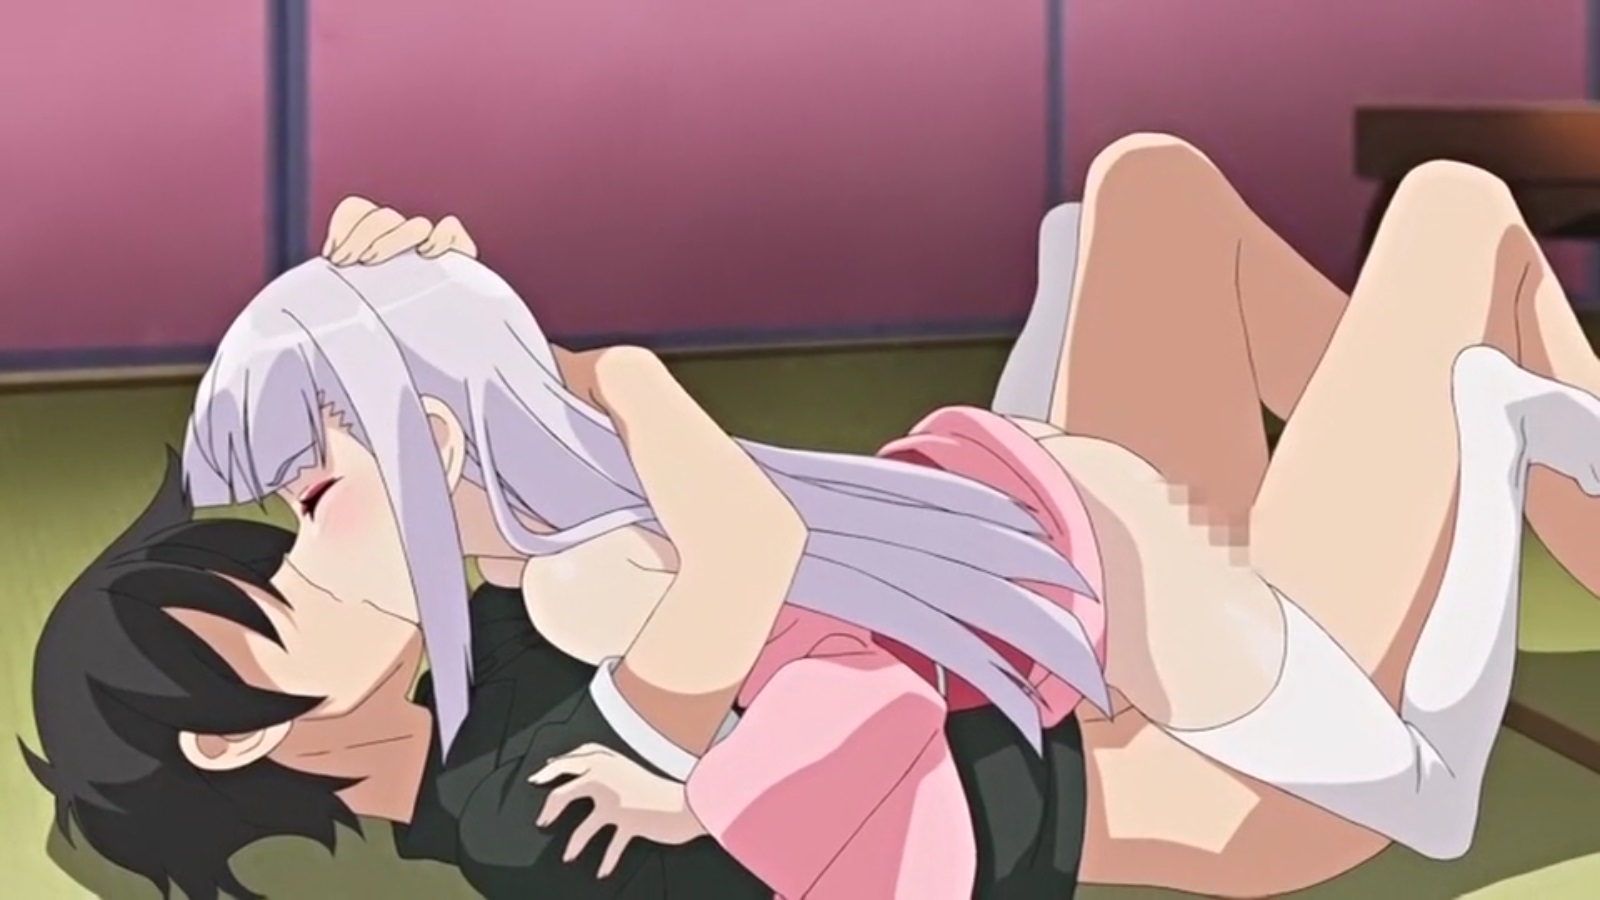 1600px x 900px - Namaiki Kissuisou E Youkoso The Animation Nr 1 Hentai Sex | HentaiSex.Tv